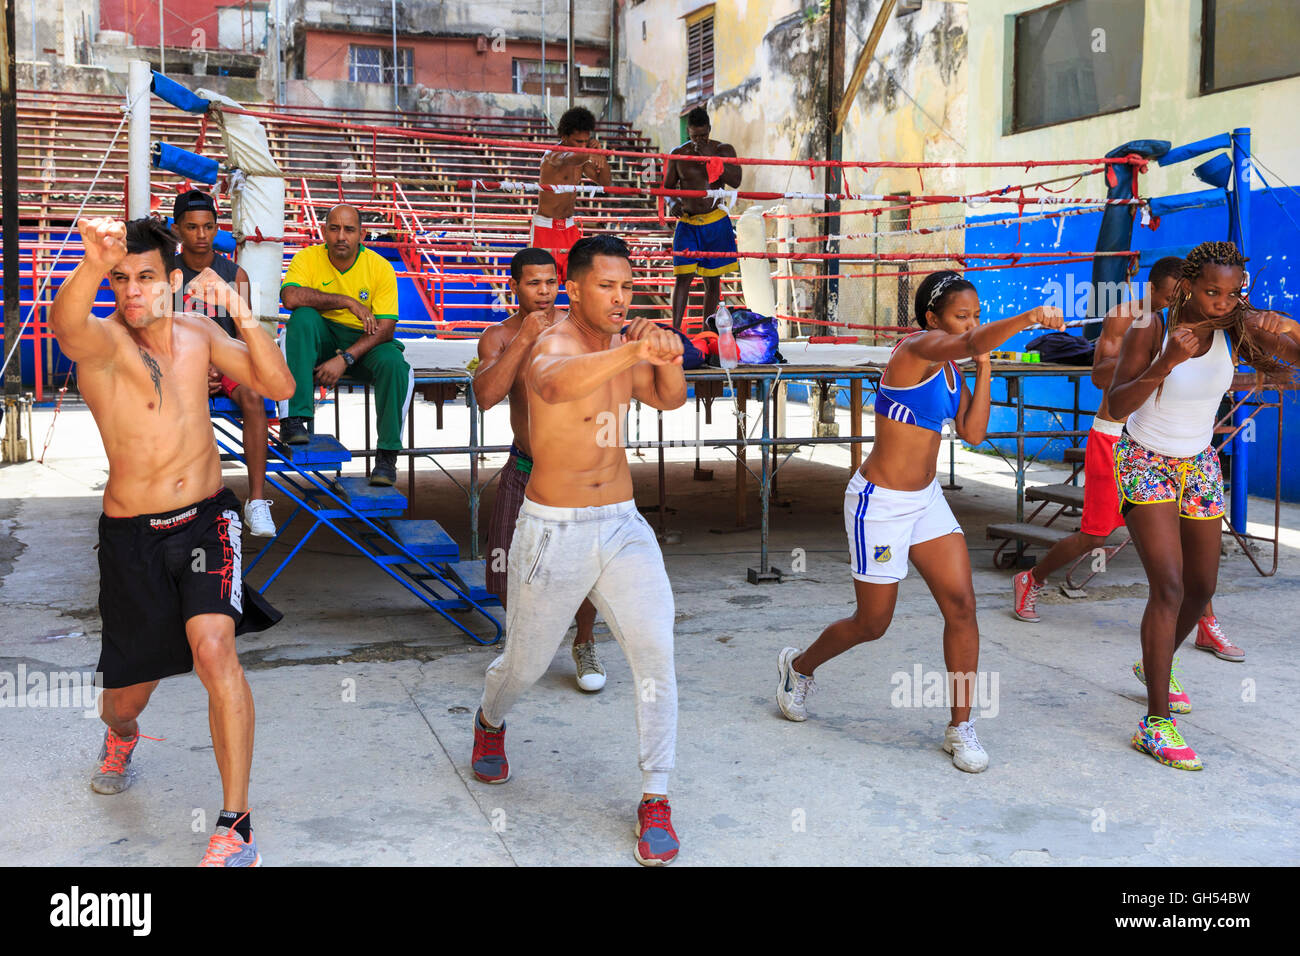 Les jeunes boxeurs formation au célèbre Gimnasio de Boxeo Rafael Trejo boxing gym, La Havane, Cuba Banque D'Images